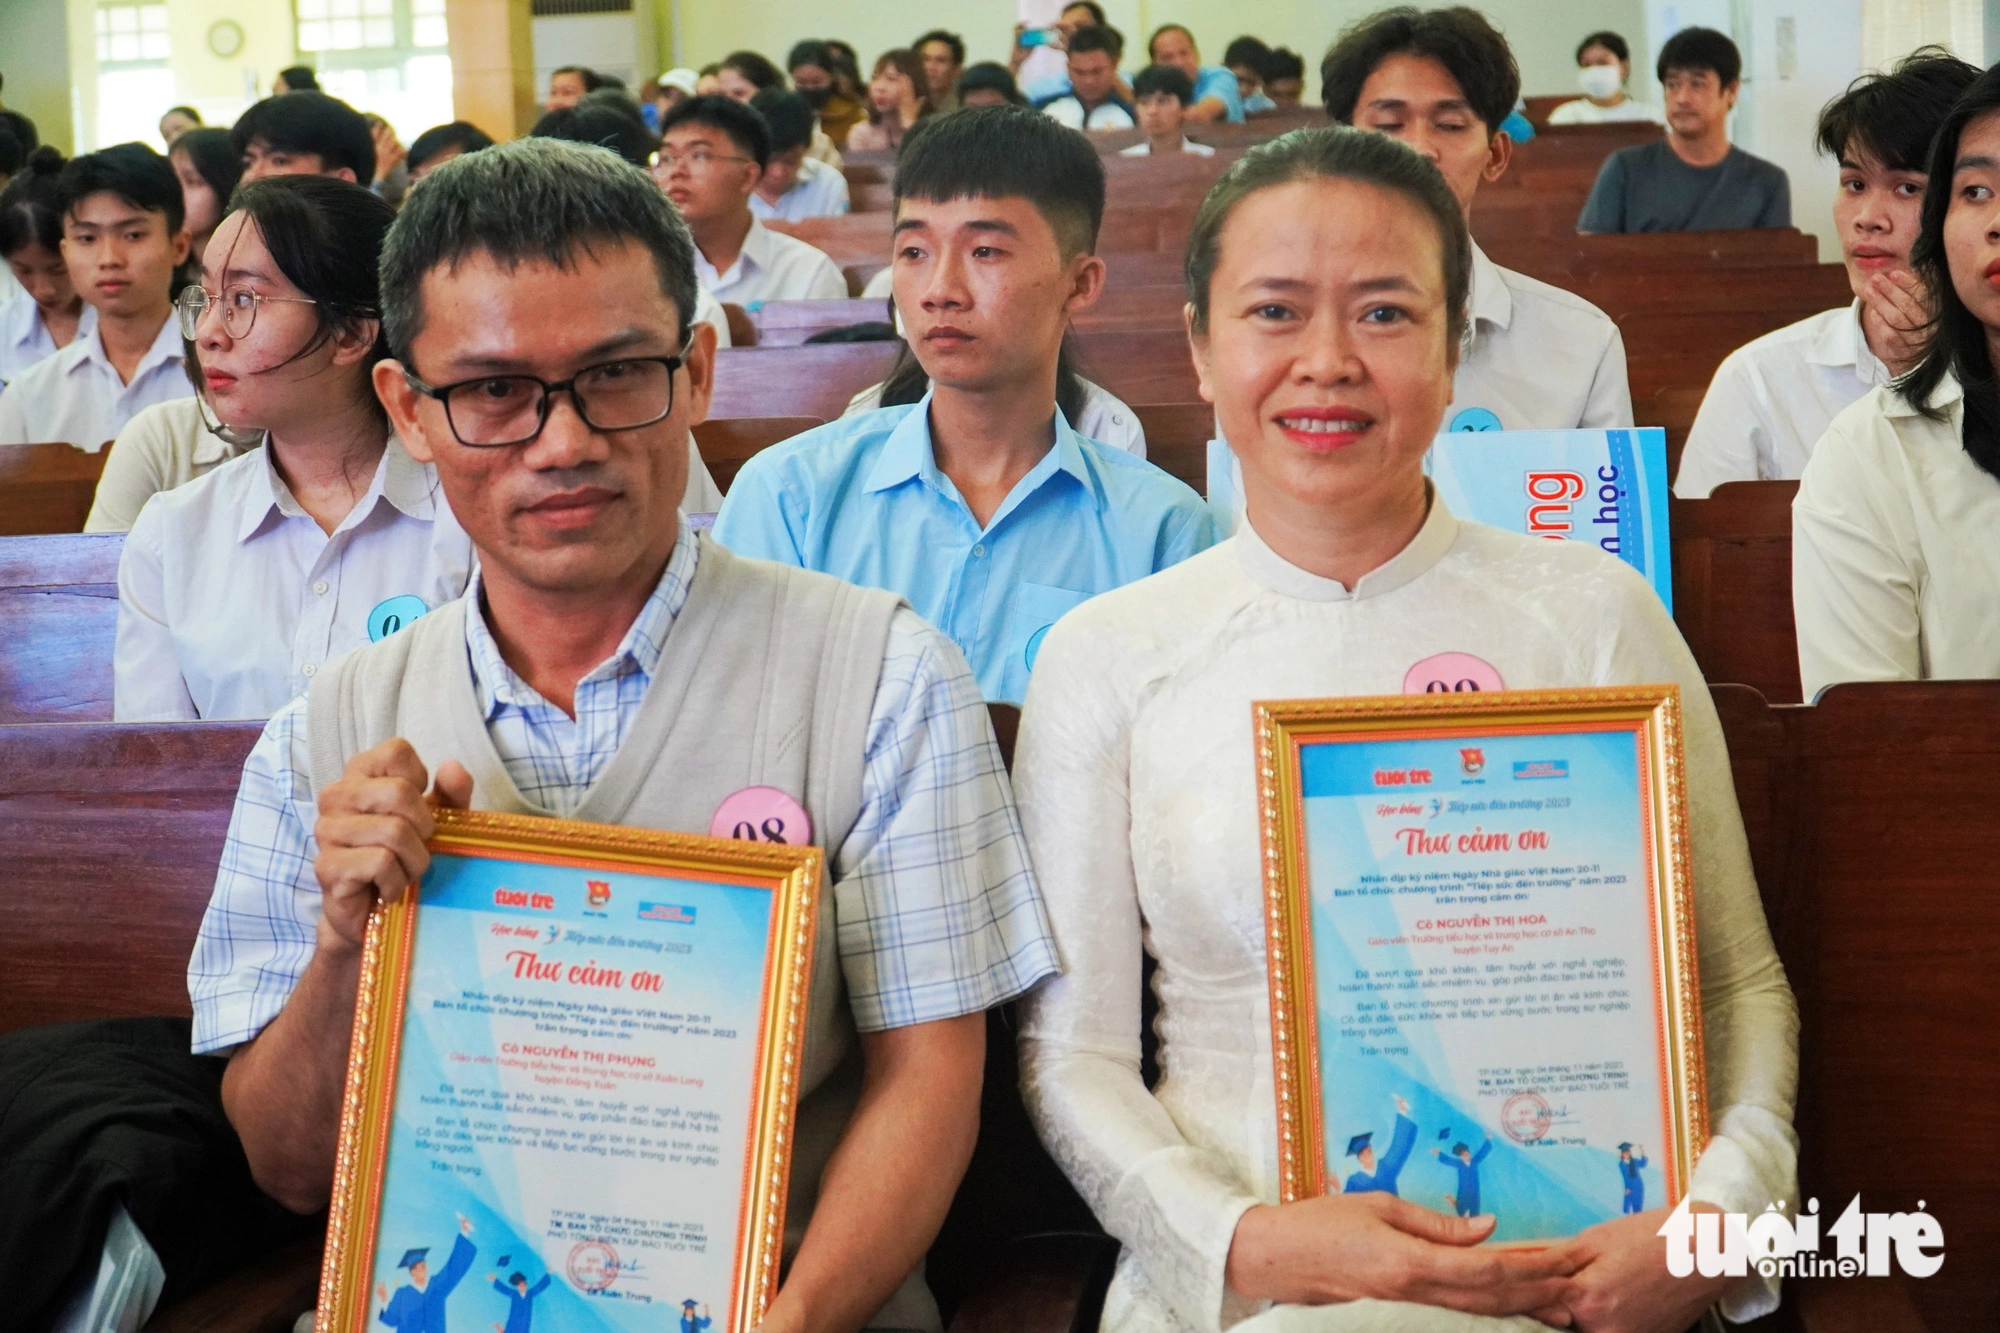 Thầy Đặng Quang Vũ và cô Võ Thị Thu Vân bày tỏ niềm vui khi nhận được những sự tri ân từ chương trình - Ảnh: TRẦN HOÀI